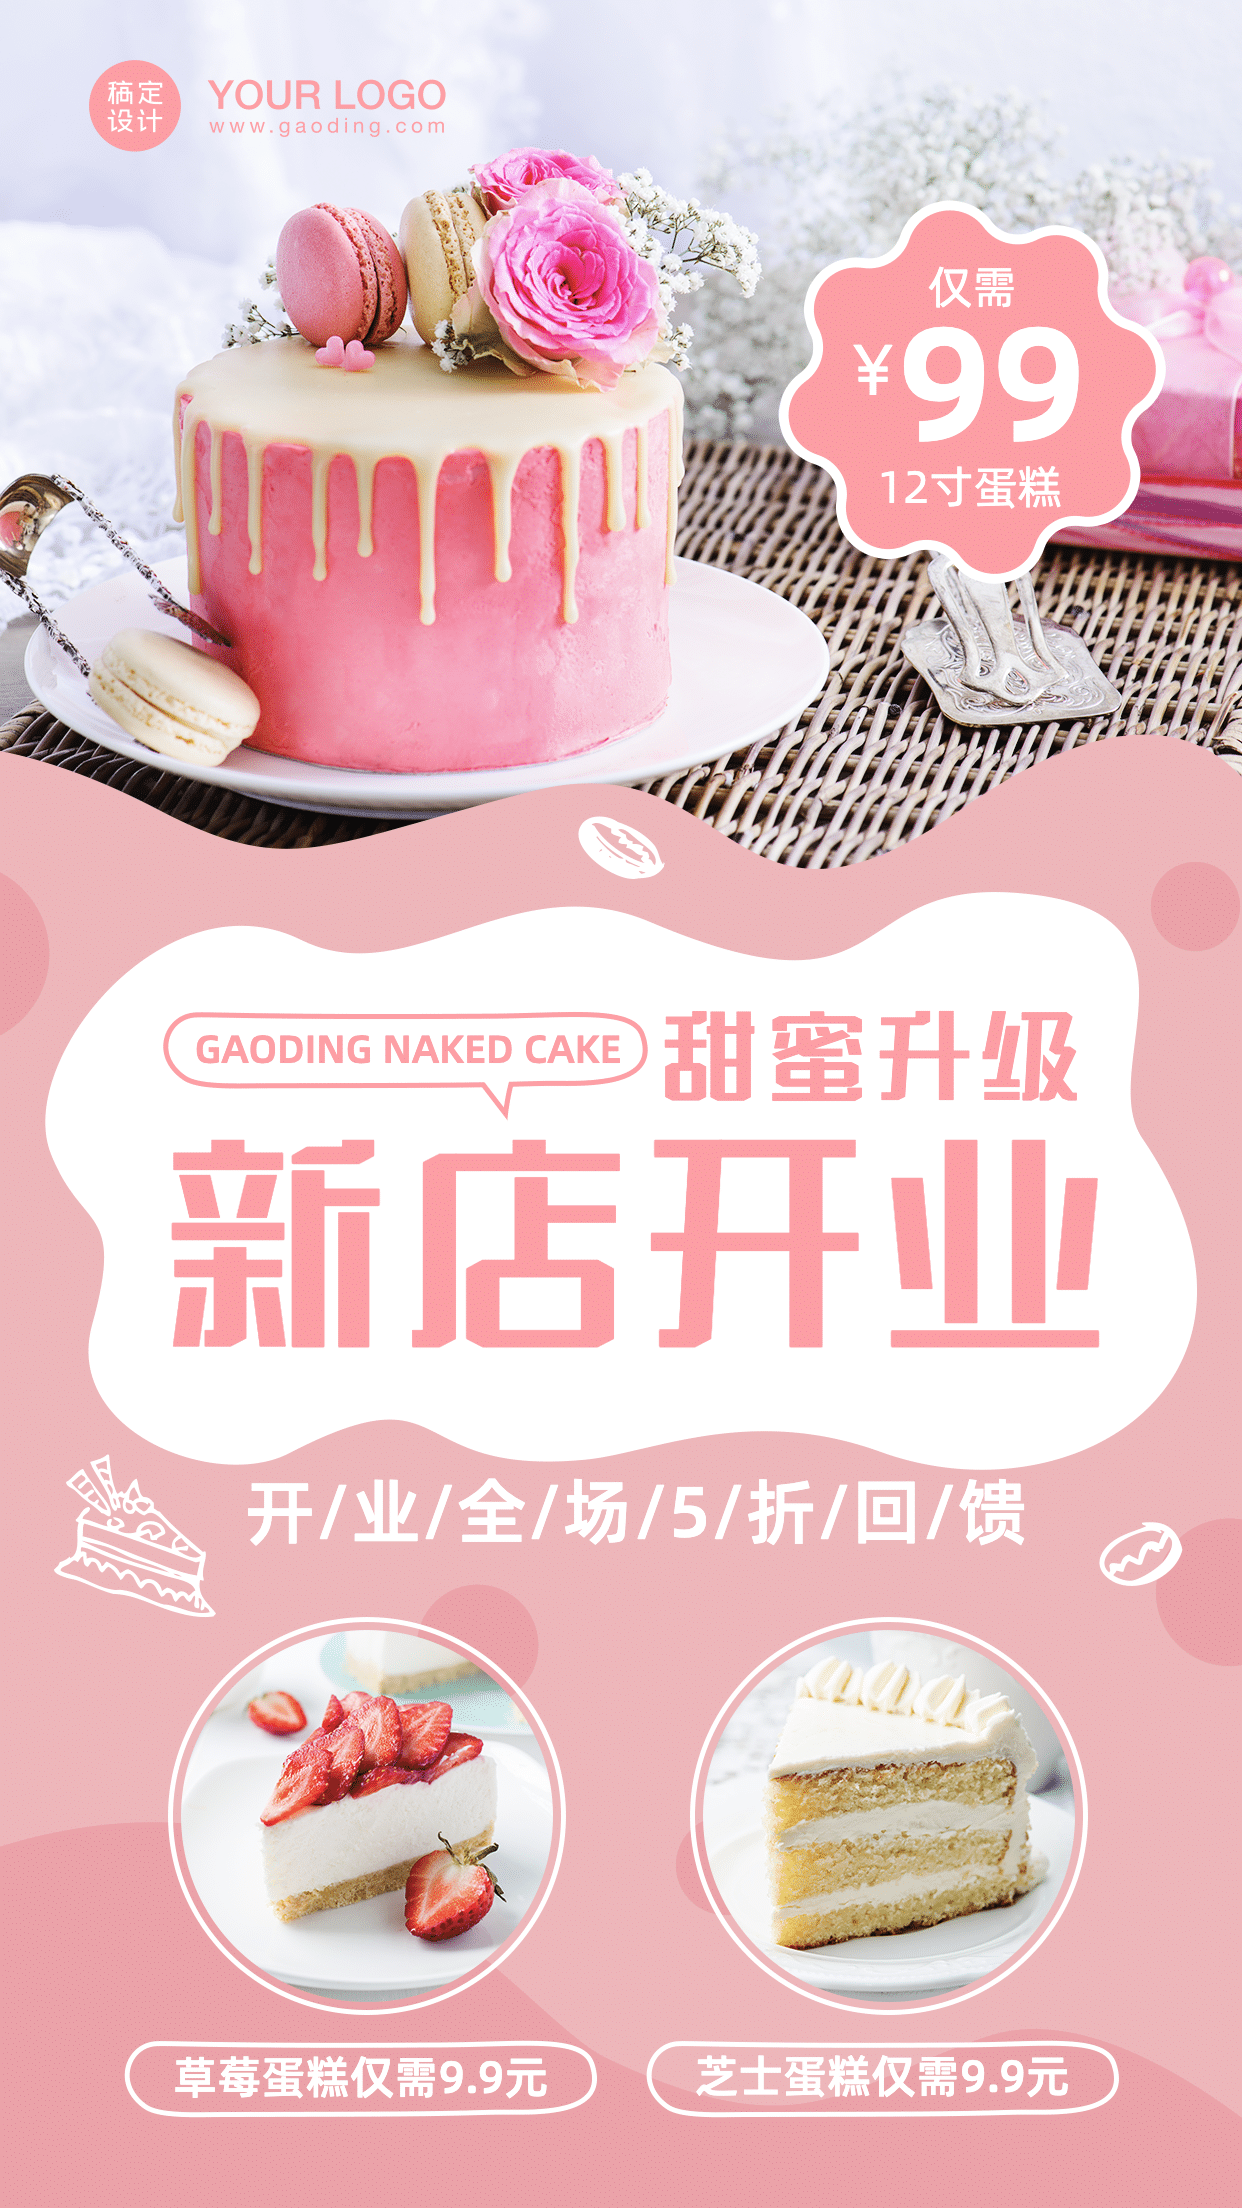 餐饮蛋糕烘焙店开业活动海报_图片模板素材-稿定设计